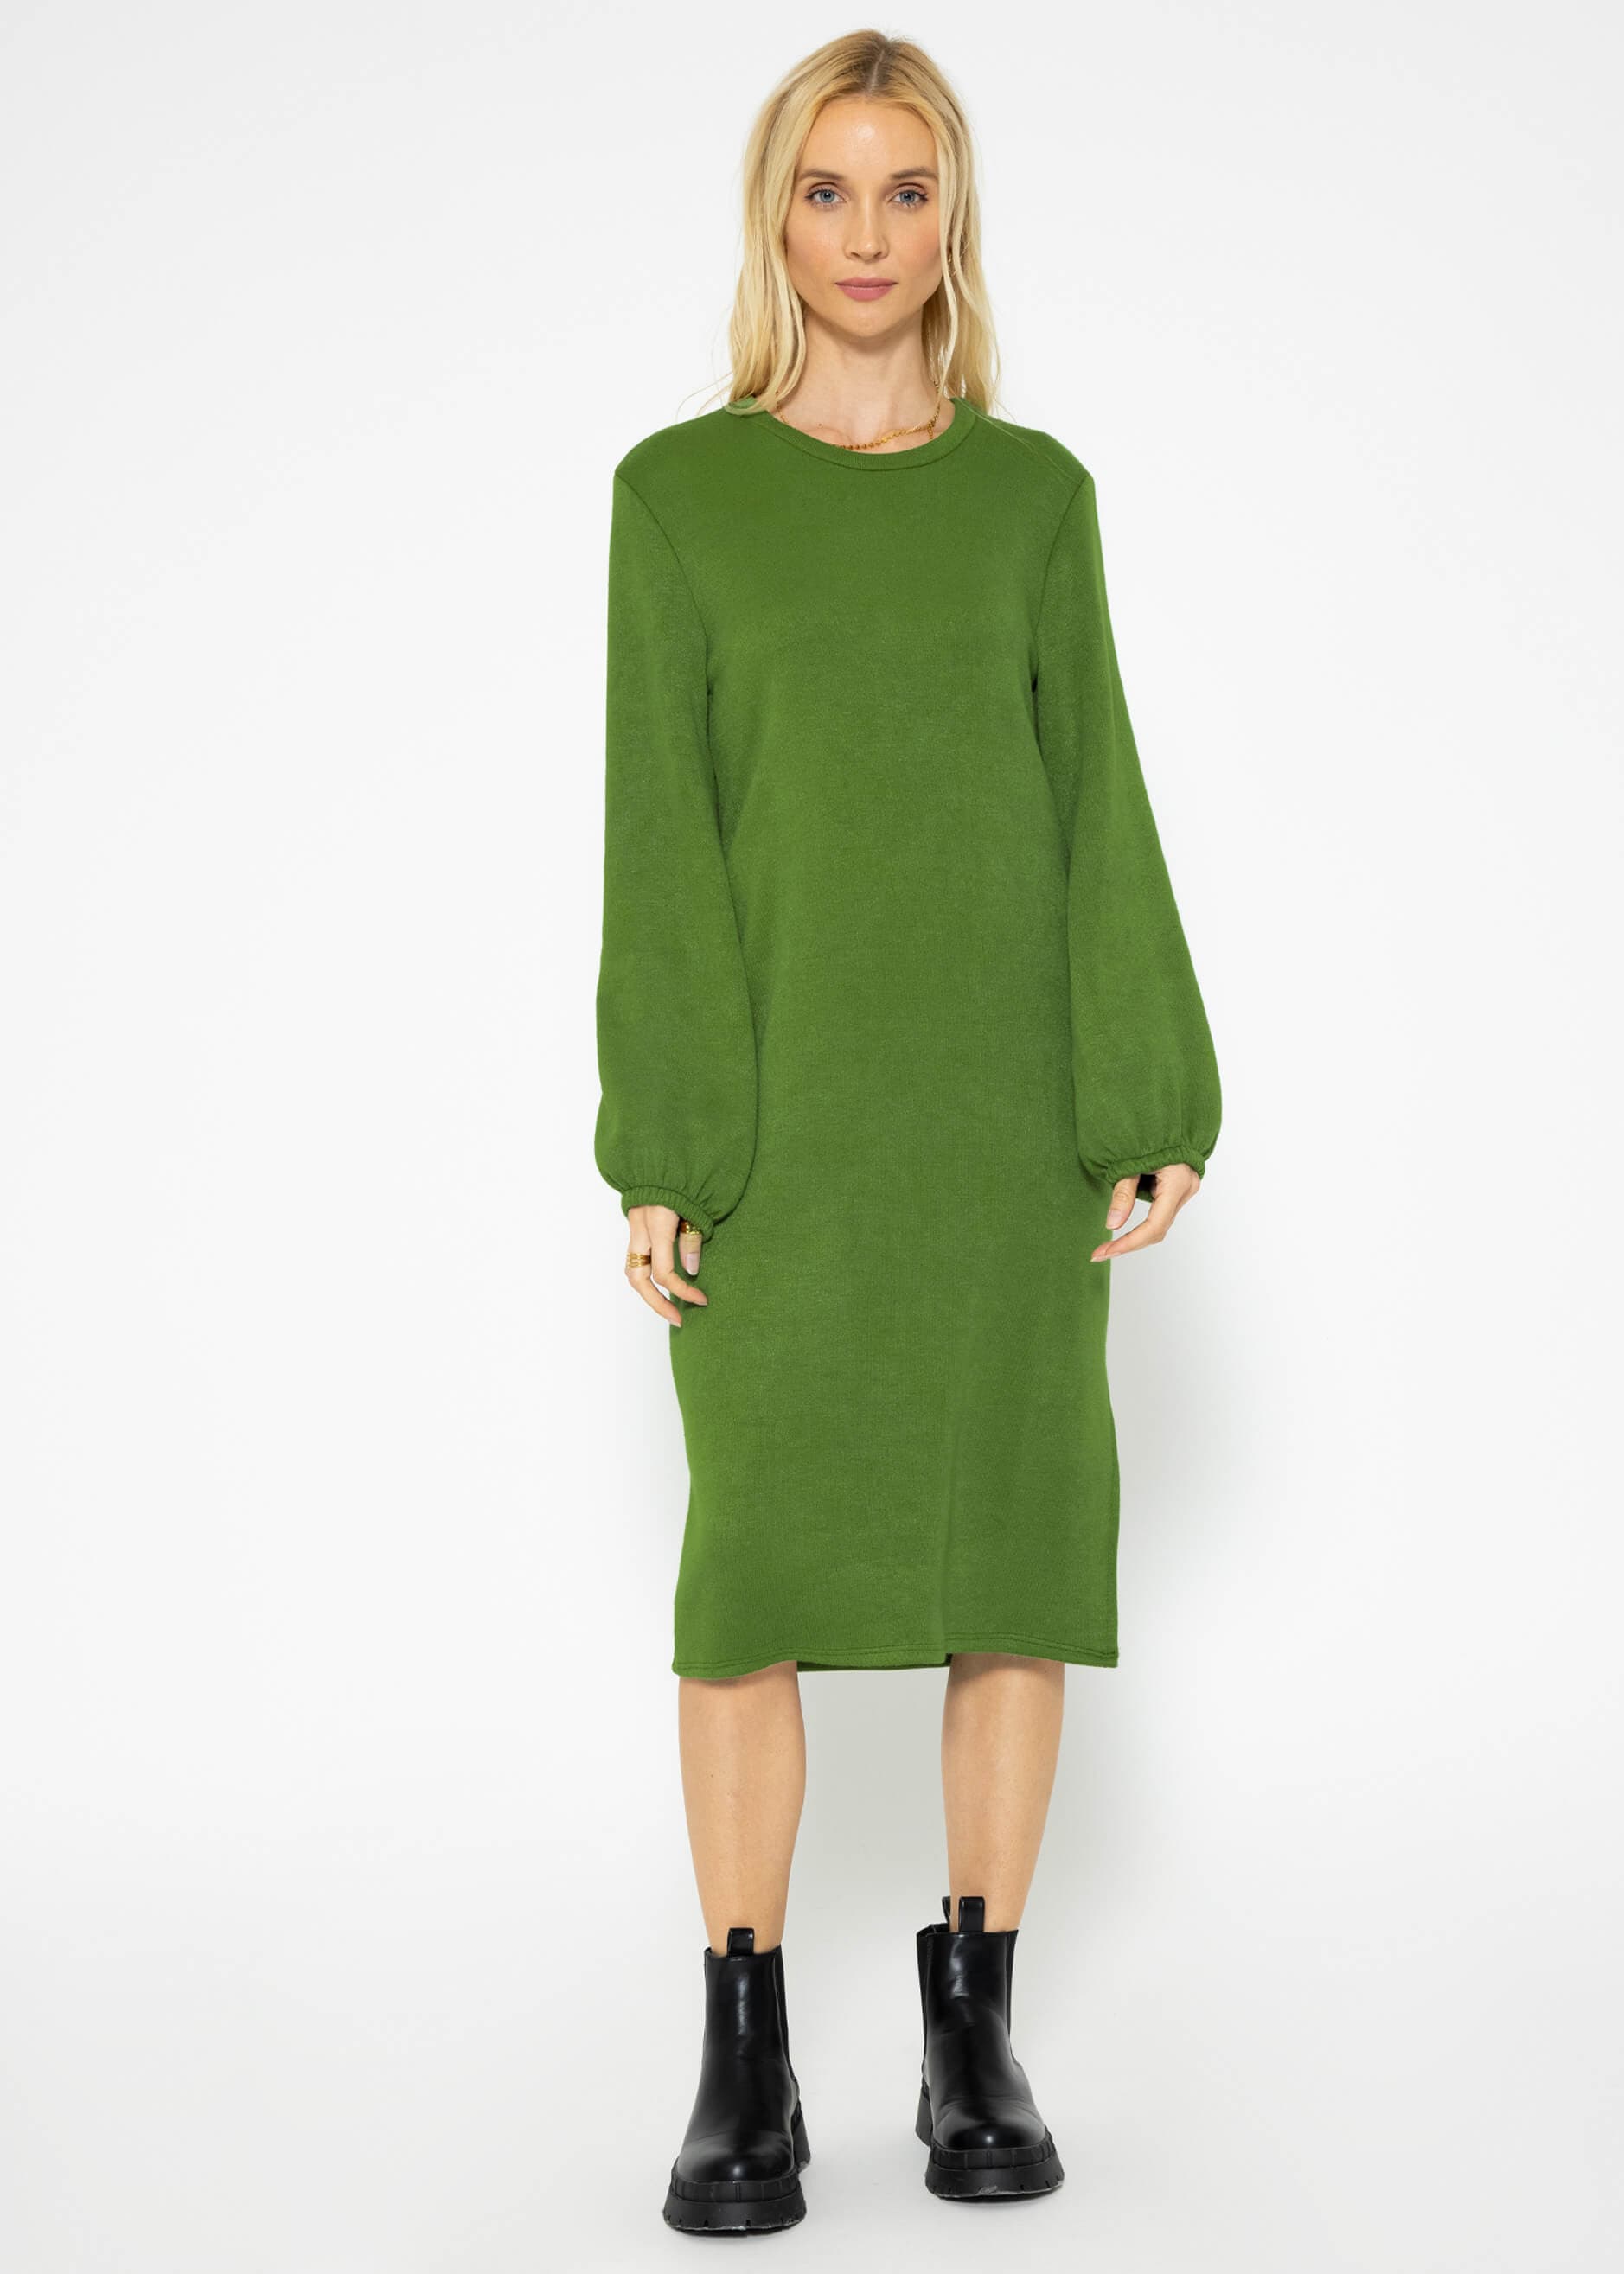 Super soft Jerseykleid in Midilänge - grün | Kleider | Bekleidung |  SASSYCLASSY | 